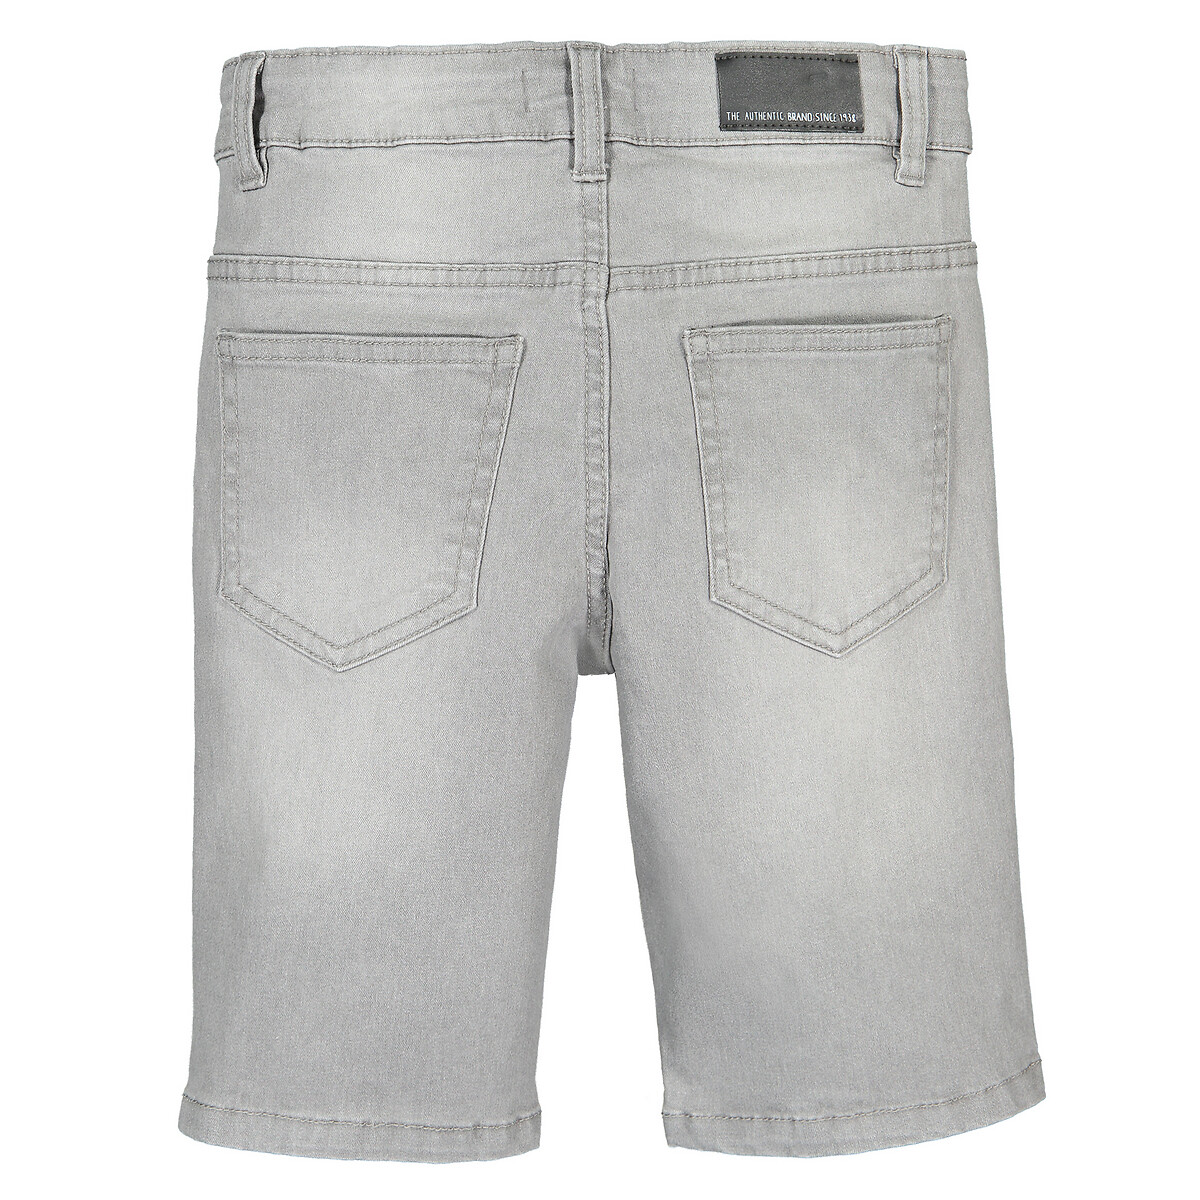 Бермуды LaRedoute Из джинсовой ткани 3-12 лет 3 серый, размер 3 - фото 4